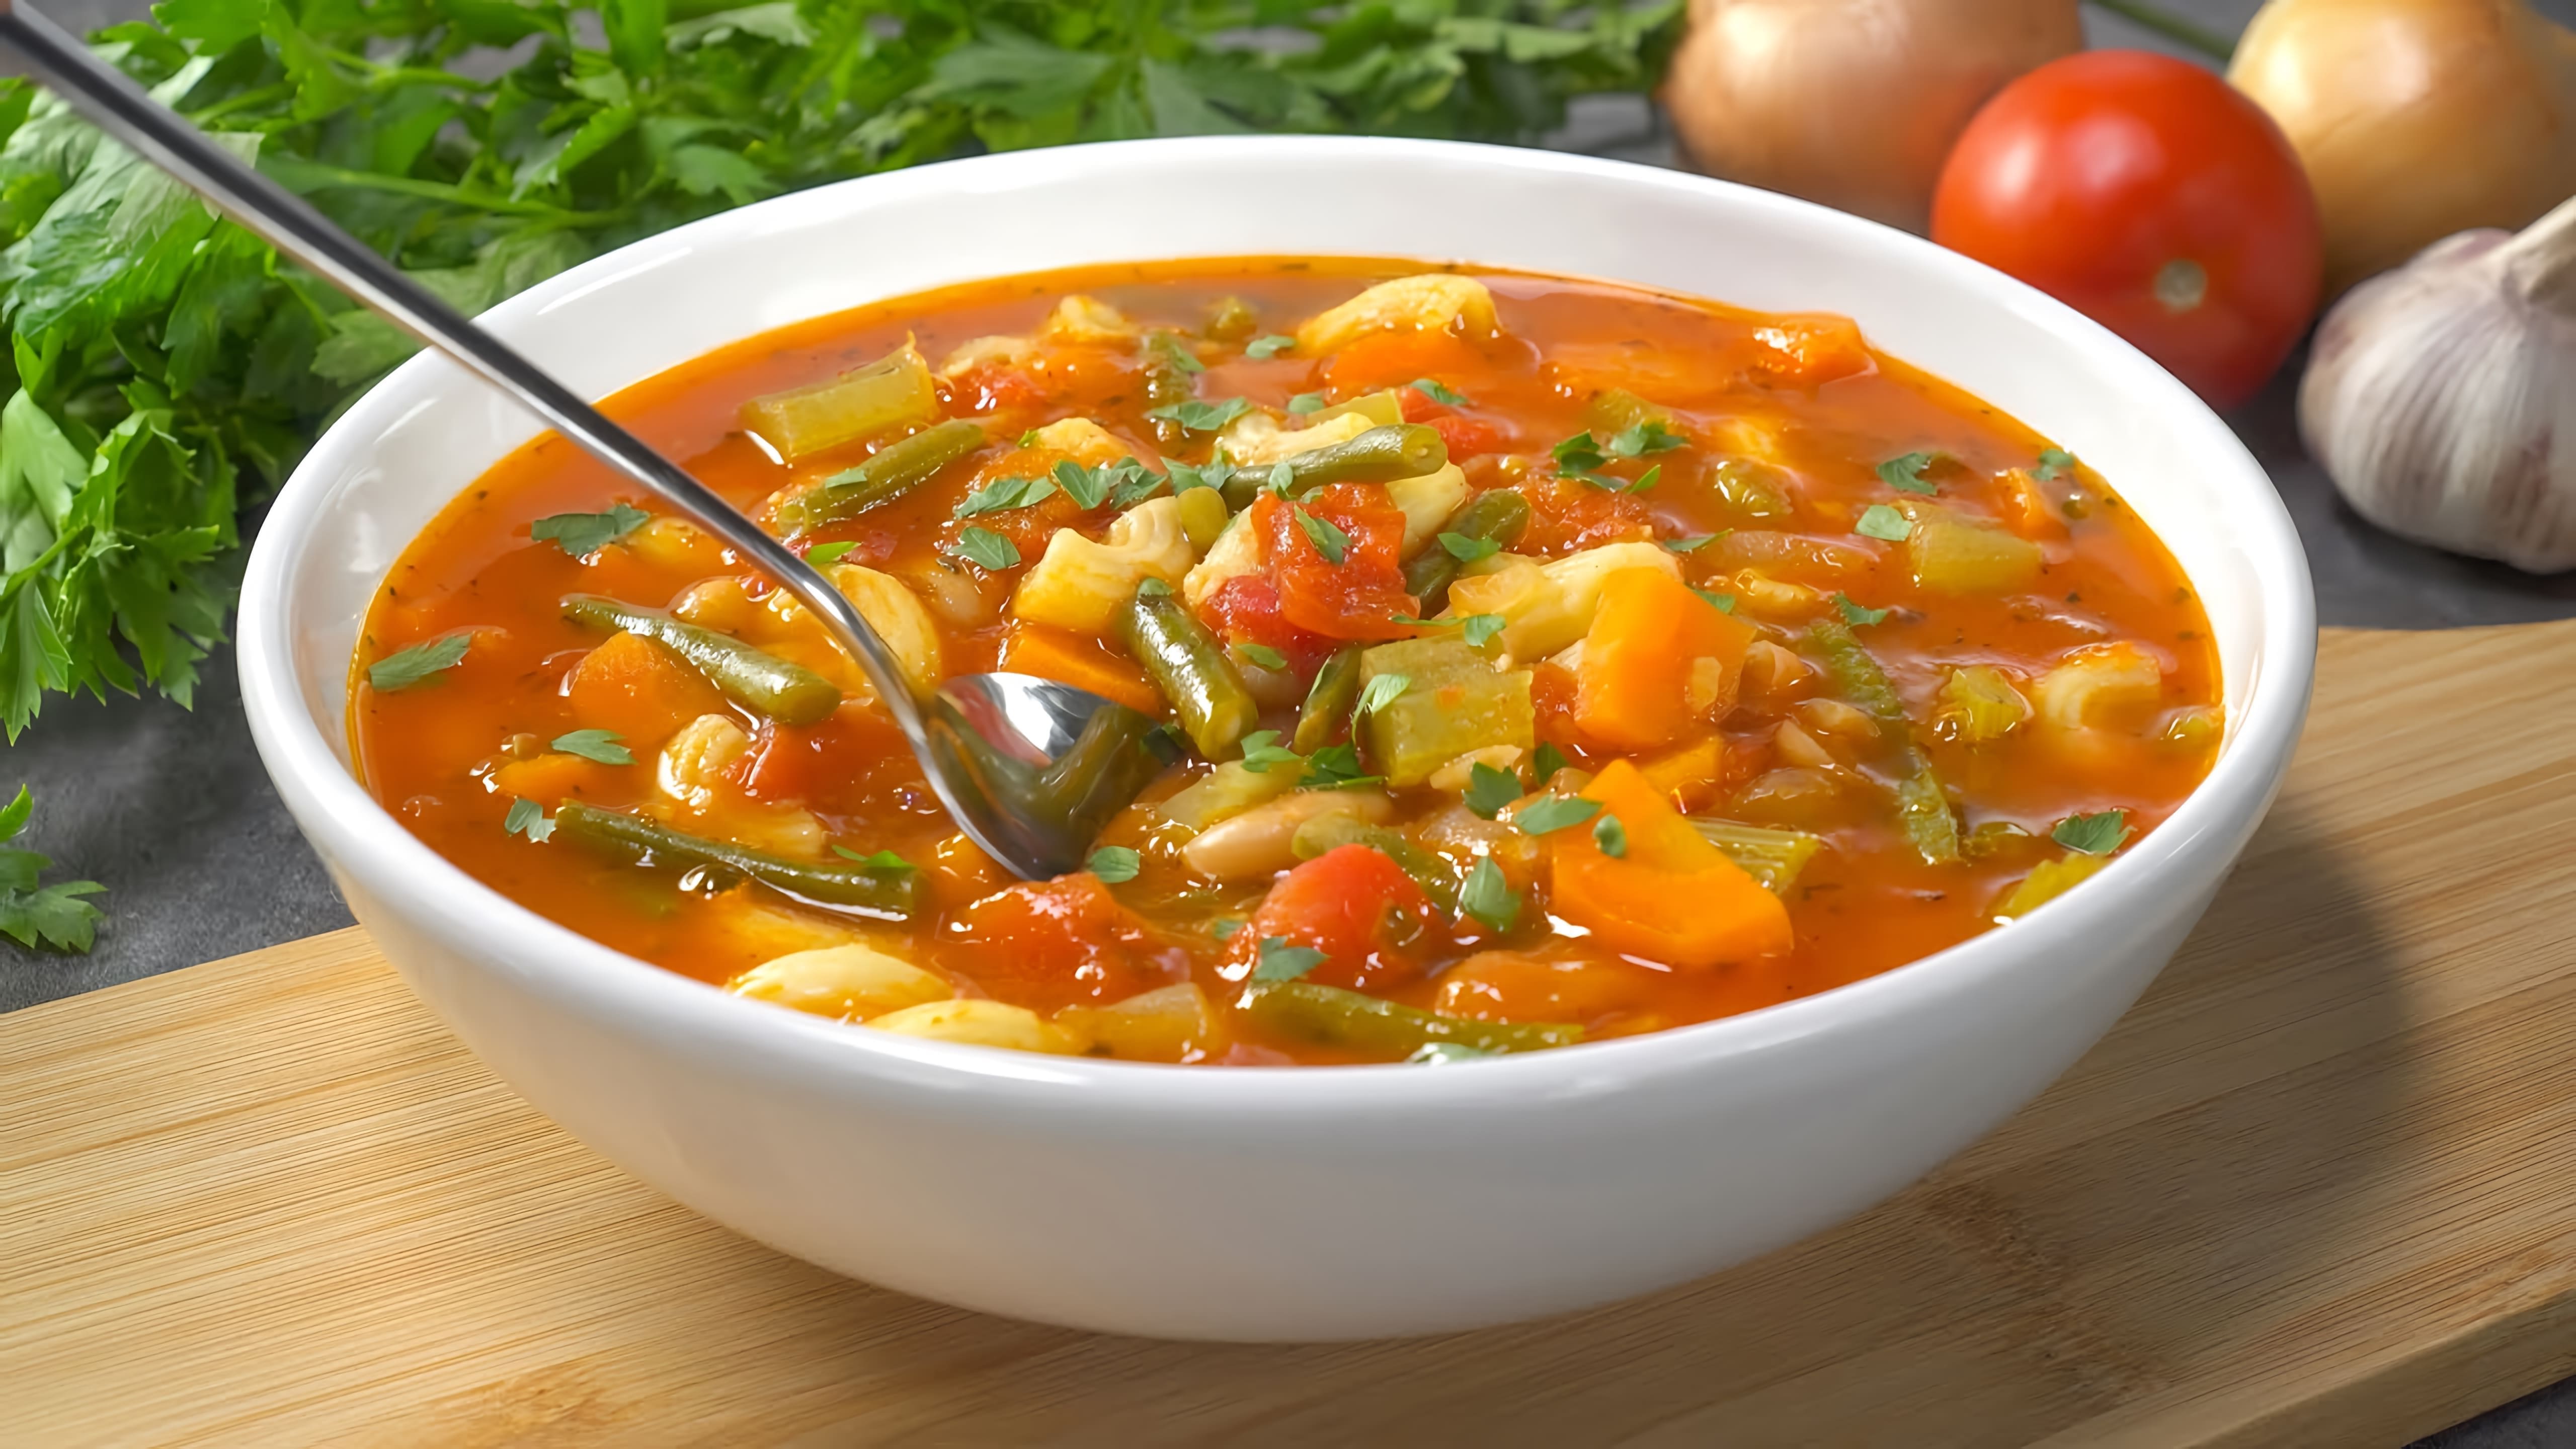 В этом видео демонстрируется рецепт приготовления знаменитого итальянского супа минестроне